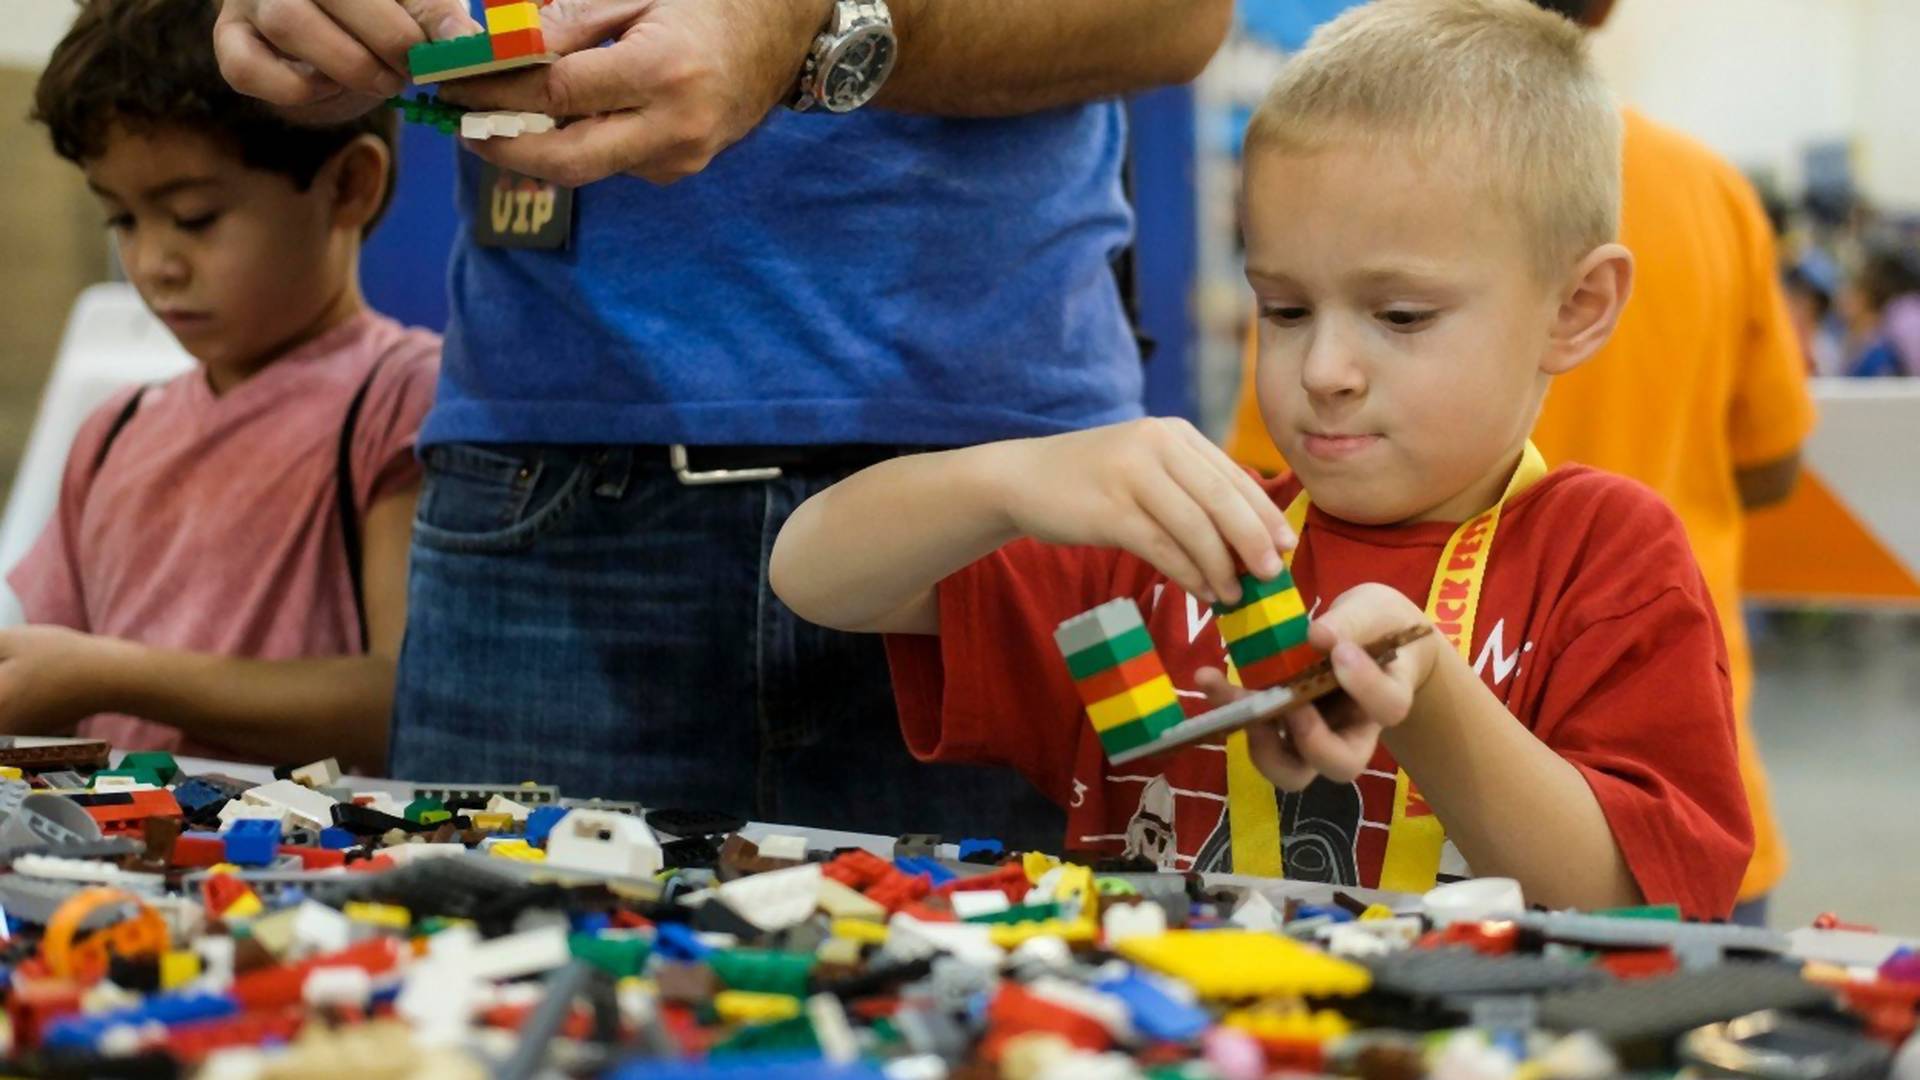 Šestogodišnjak se prijavio na konkurs za kompaniju Lego jer ima najviše iskustva